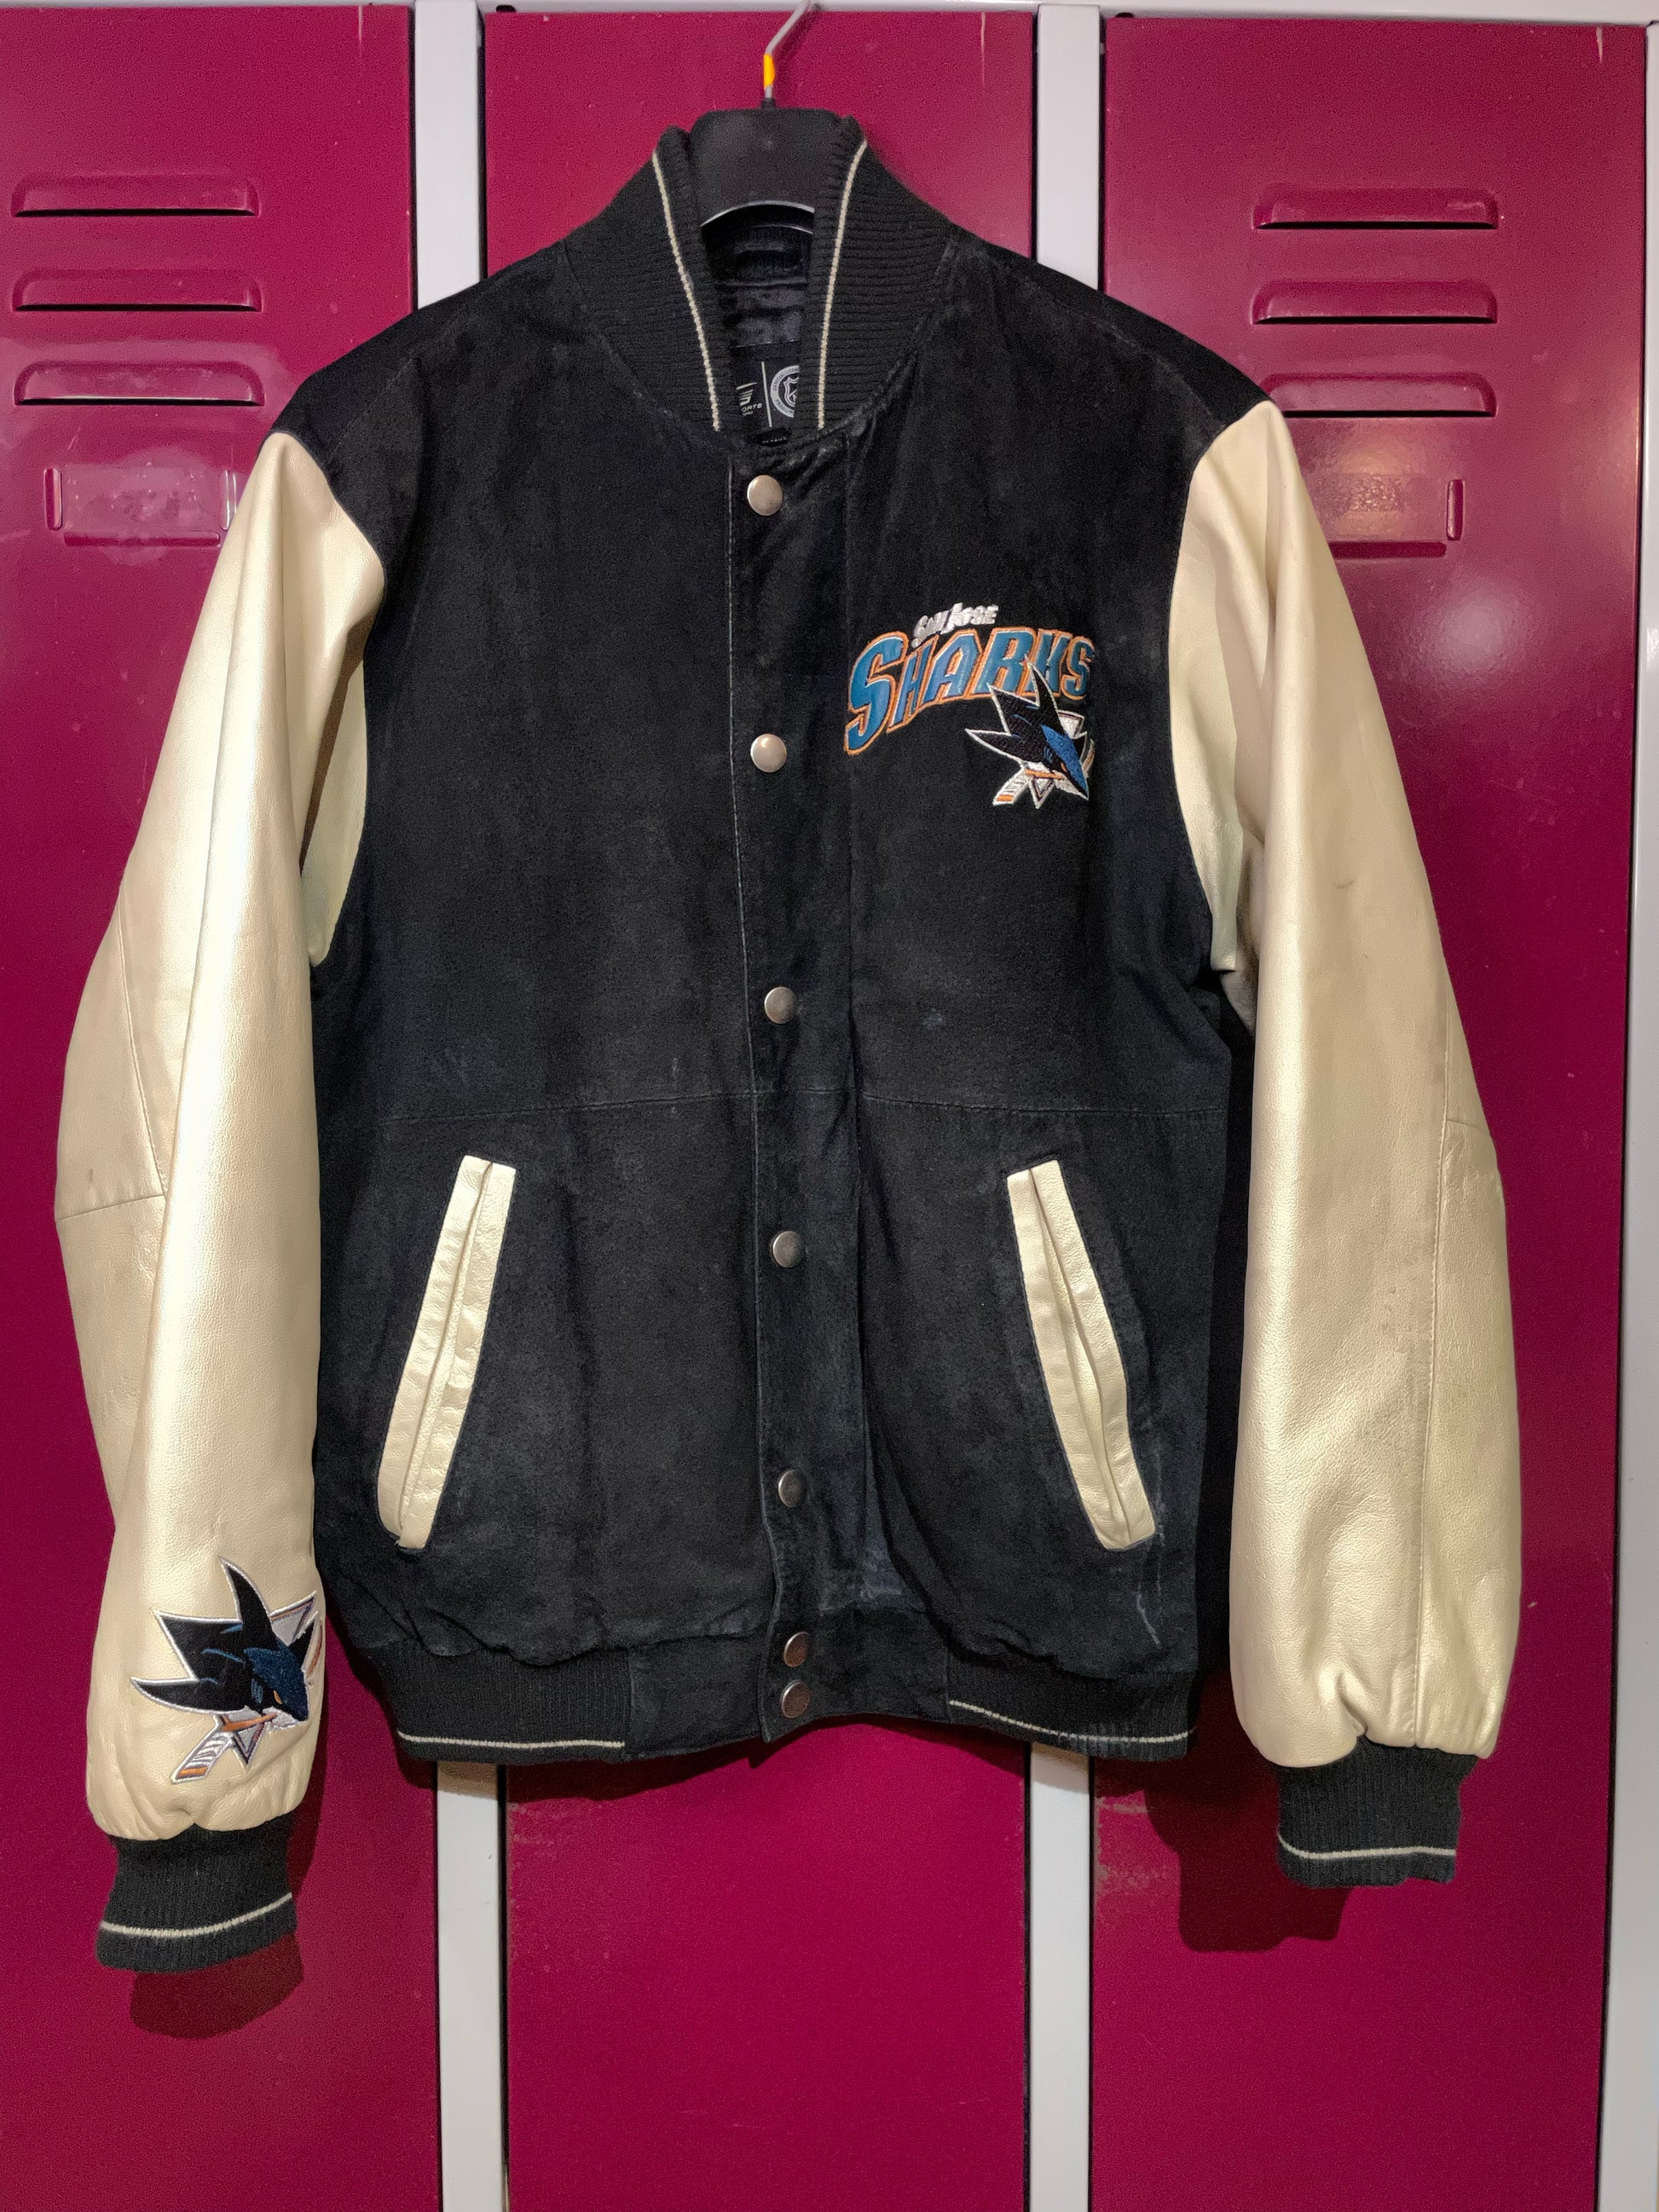 Classic Varsity Basketball Unisex College Jacket - Buy Leather